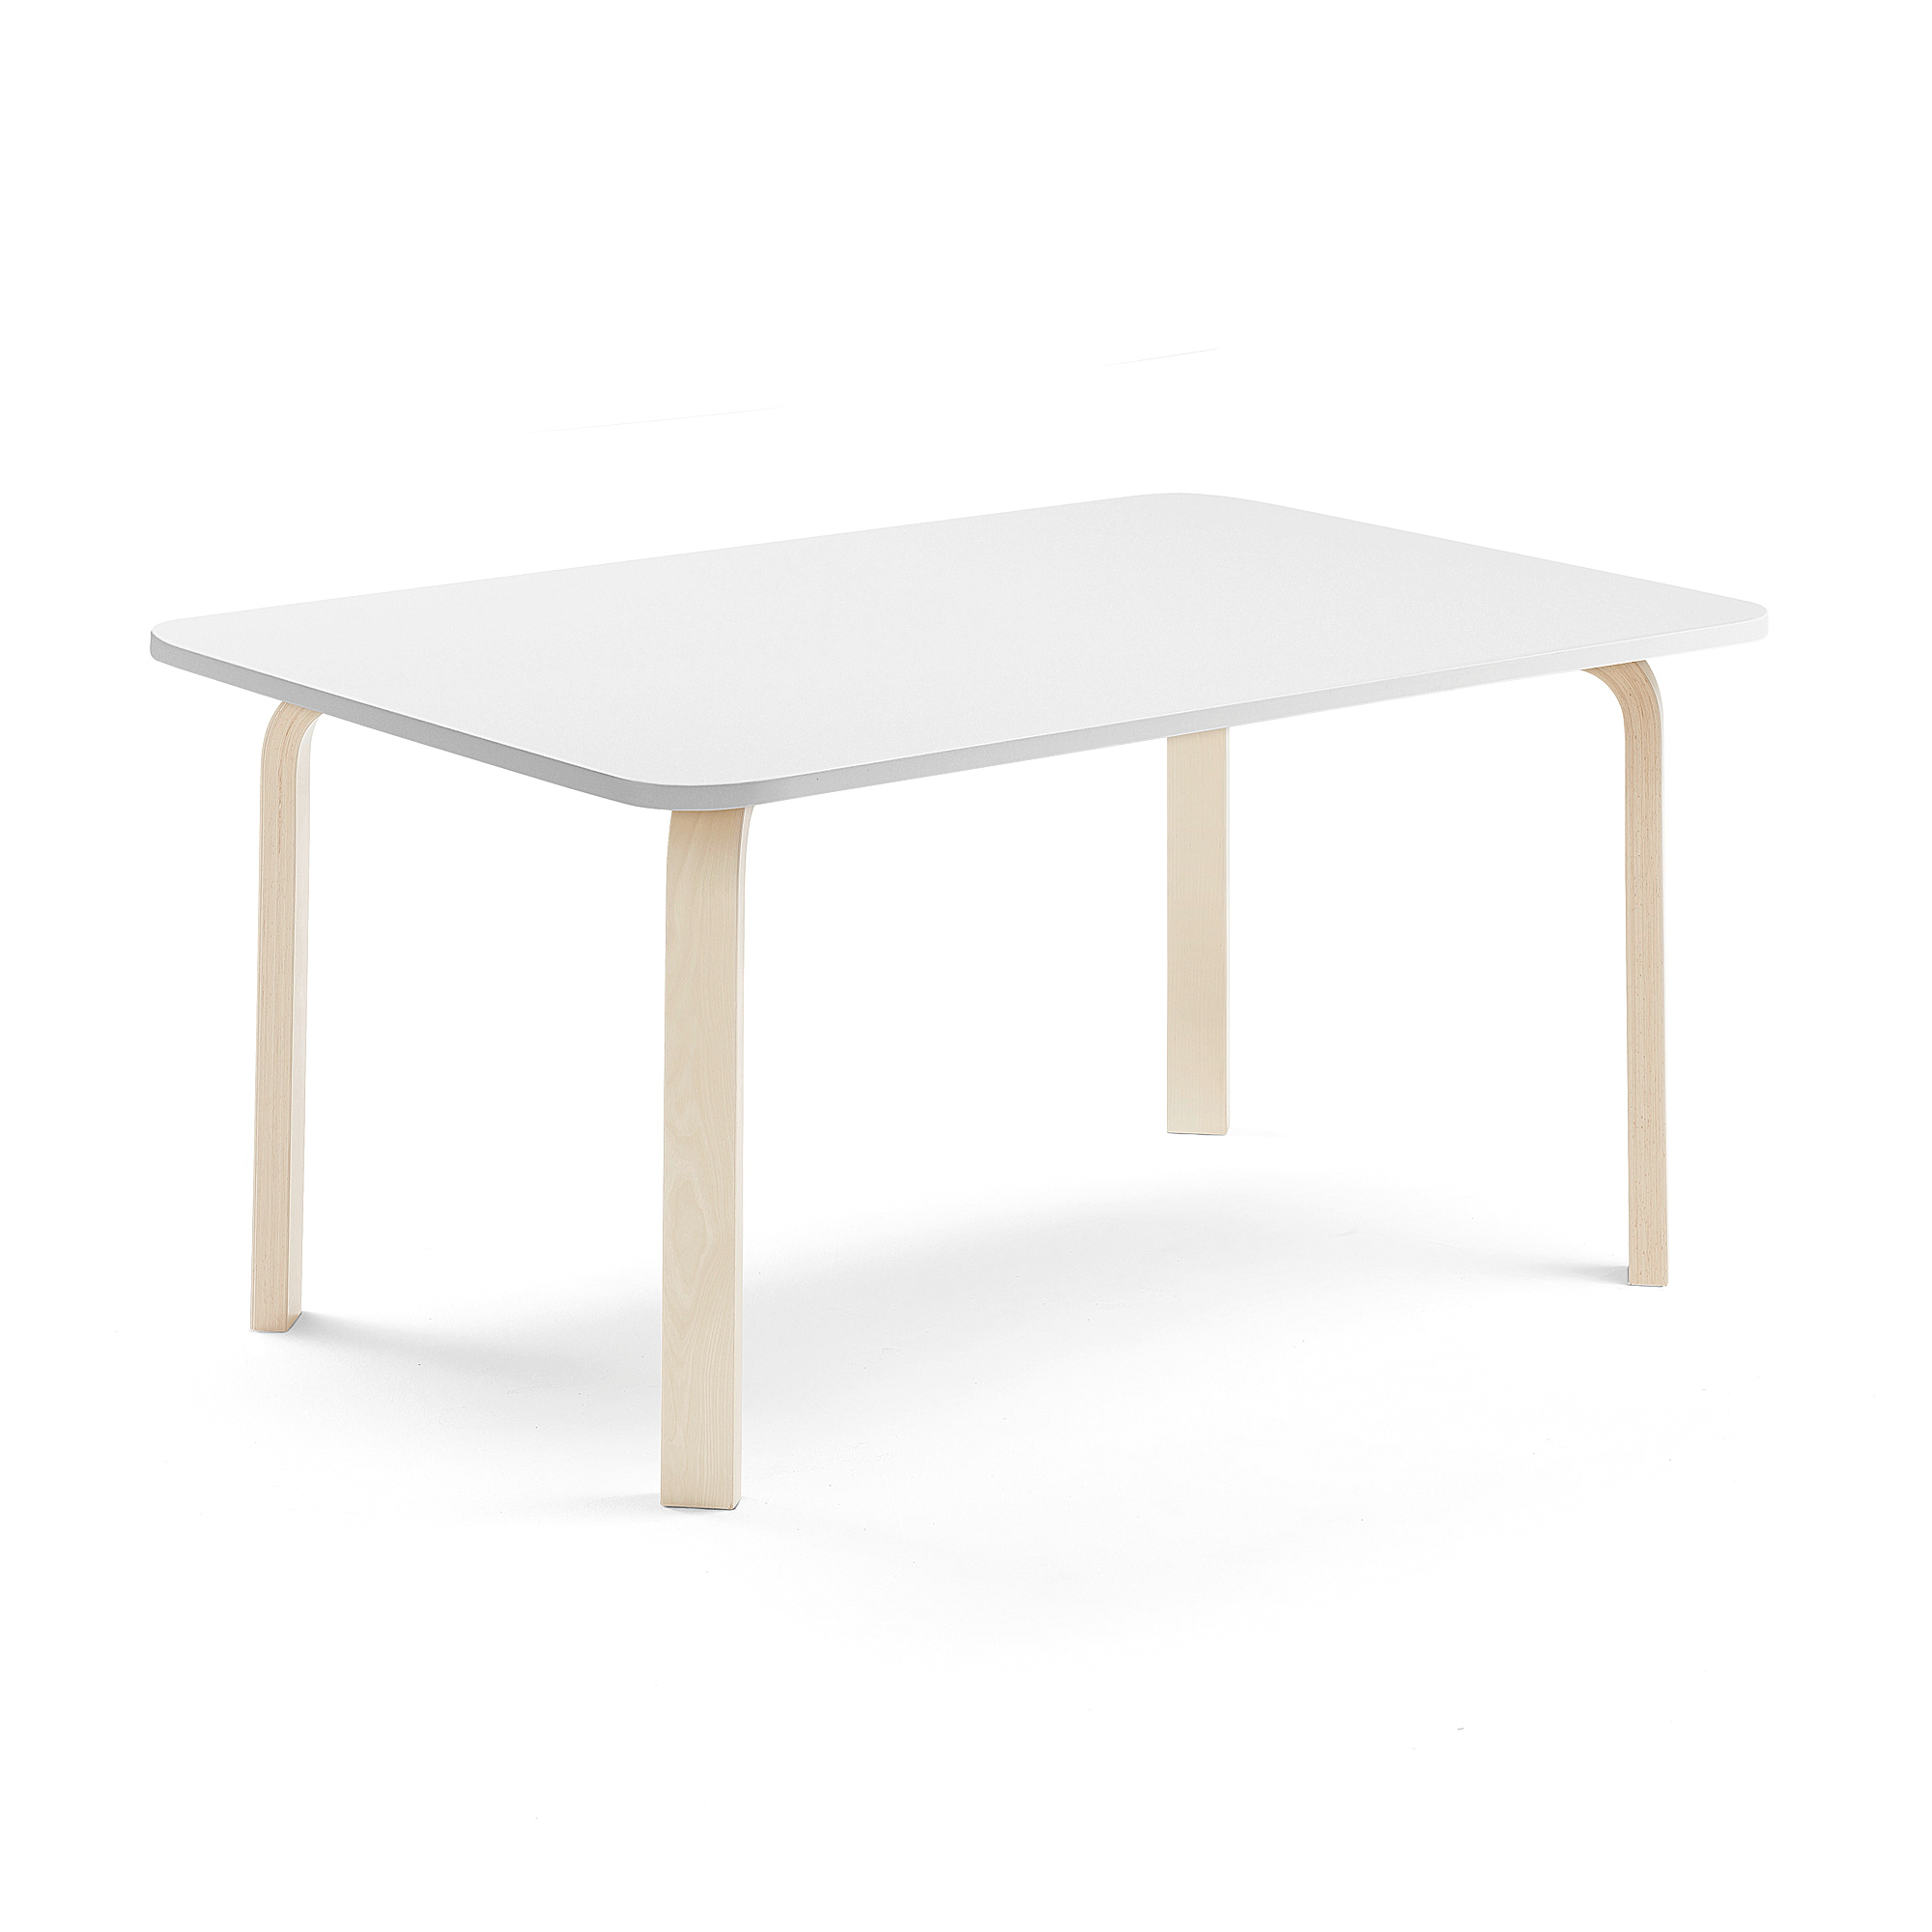 Stůl ELTON, 1400x700x590 mm, bříza, akustická HPL deska, bílá